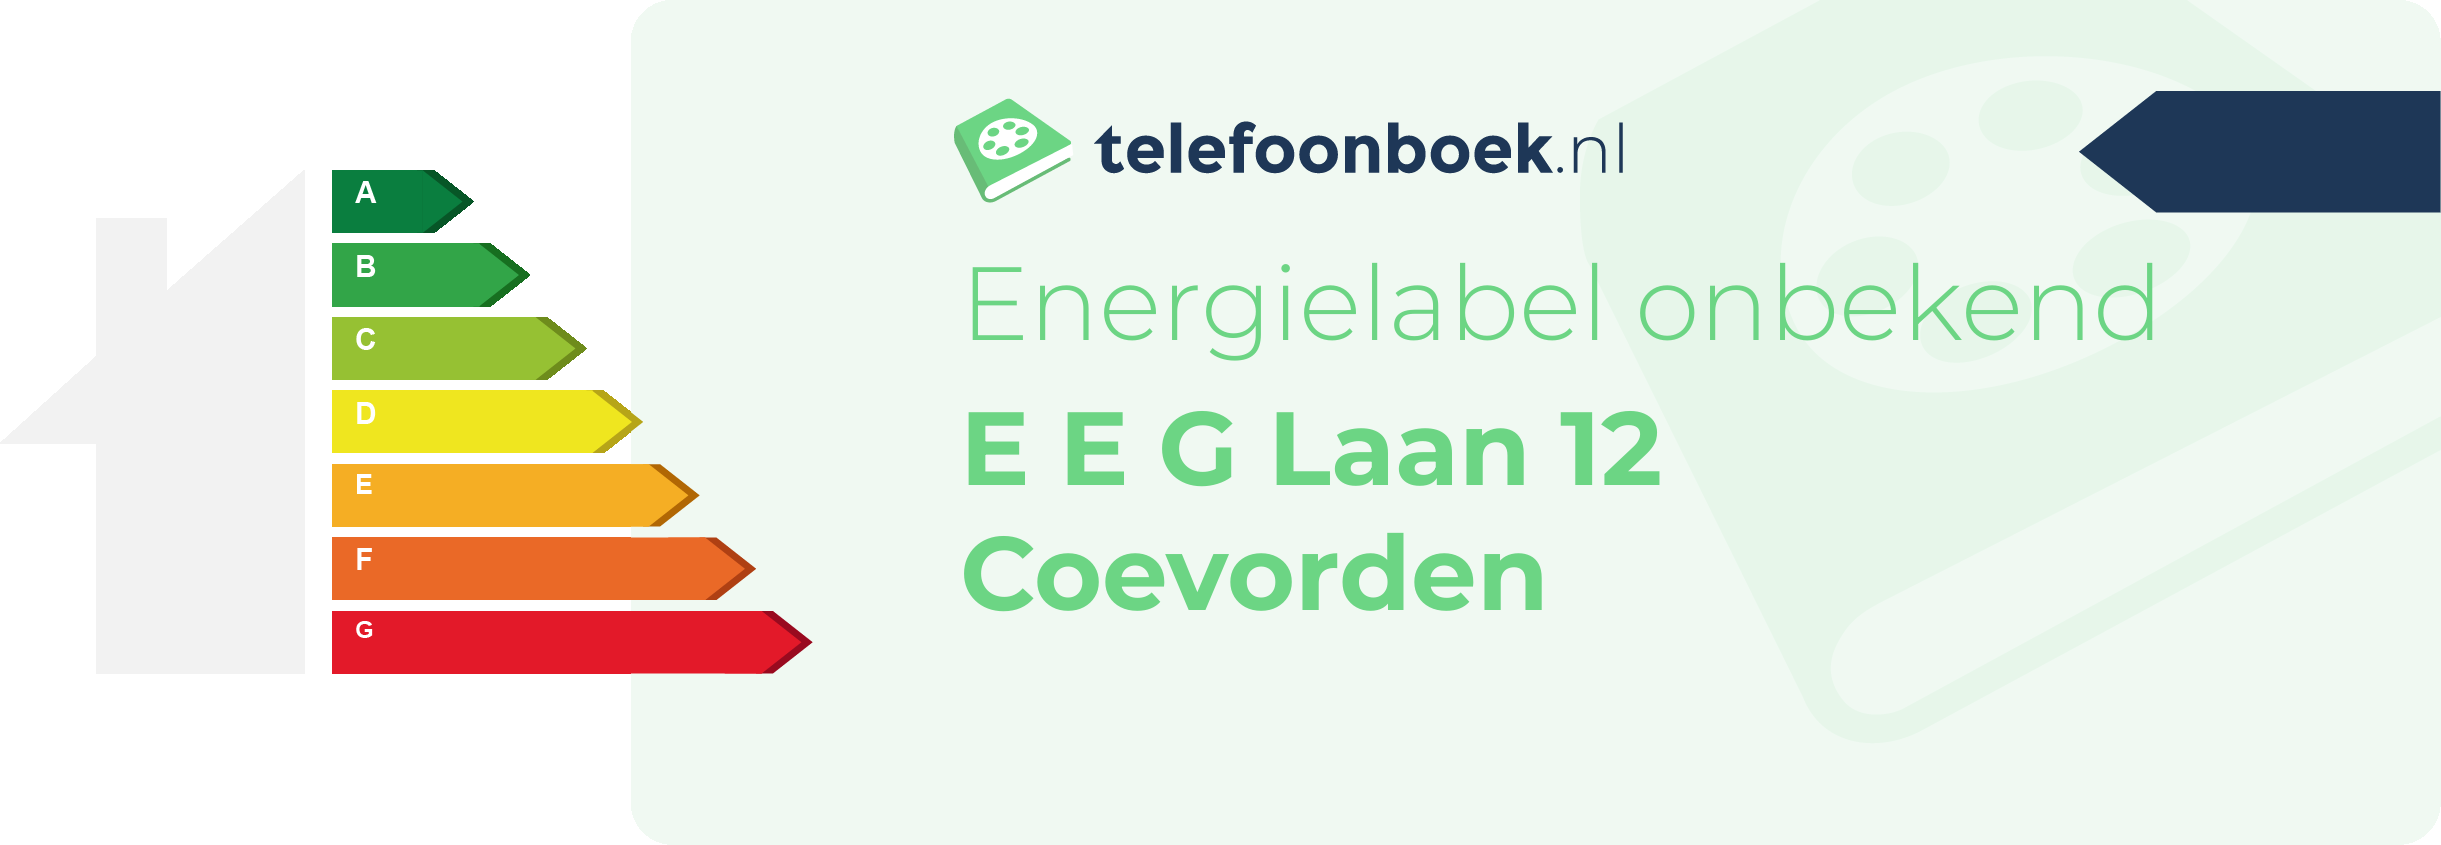 Energielabel E E G Laan 12 Coevorden